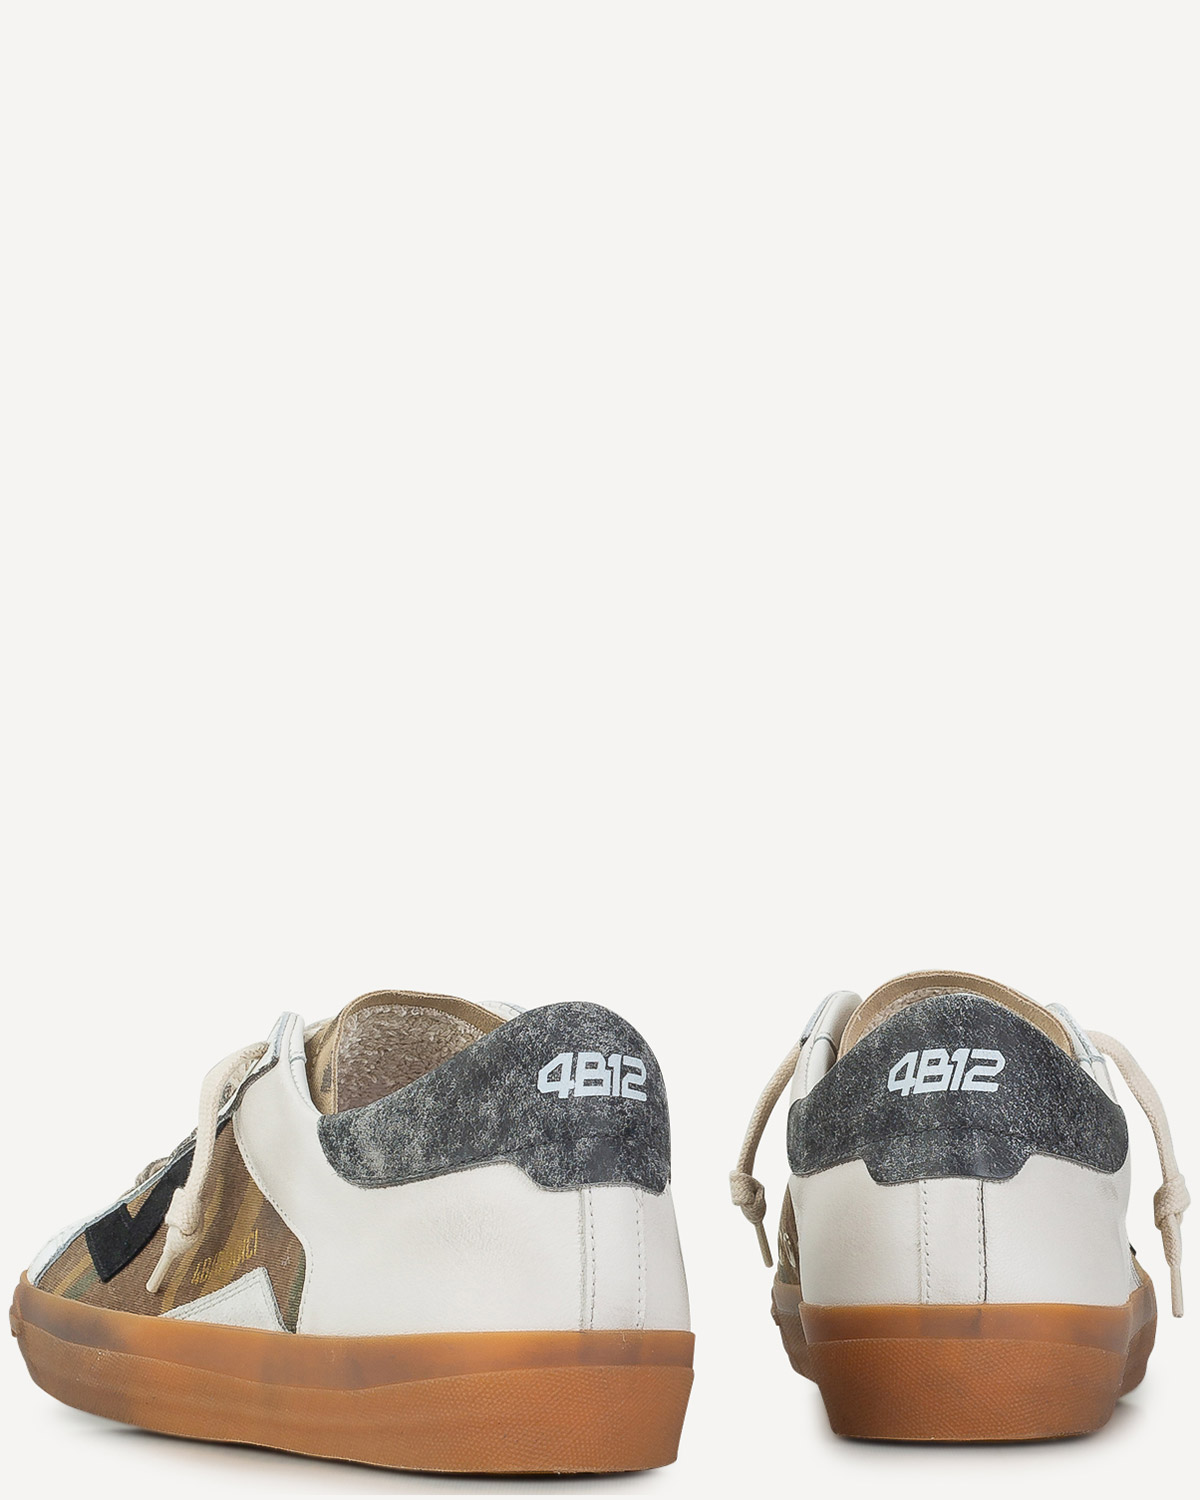 Άνδρας - Sneakers - 4B12 Λευκό